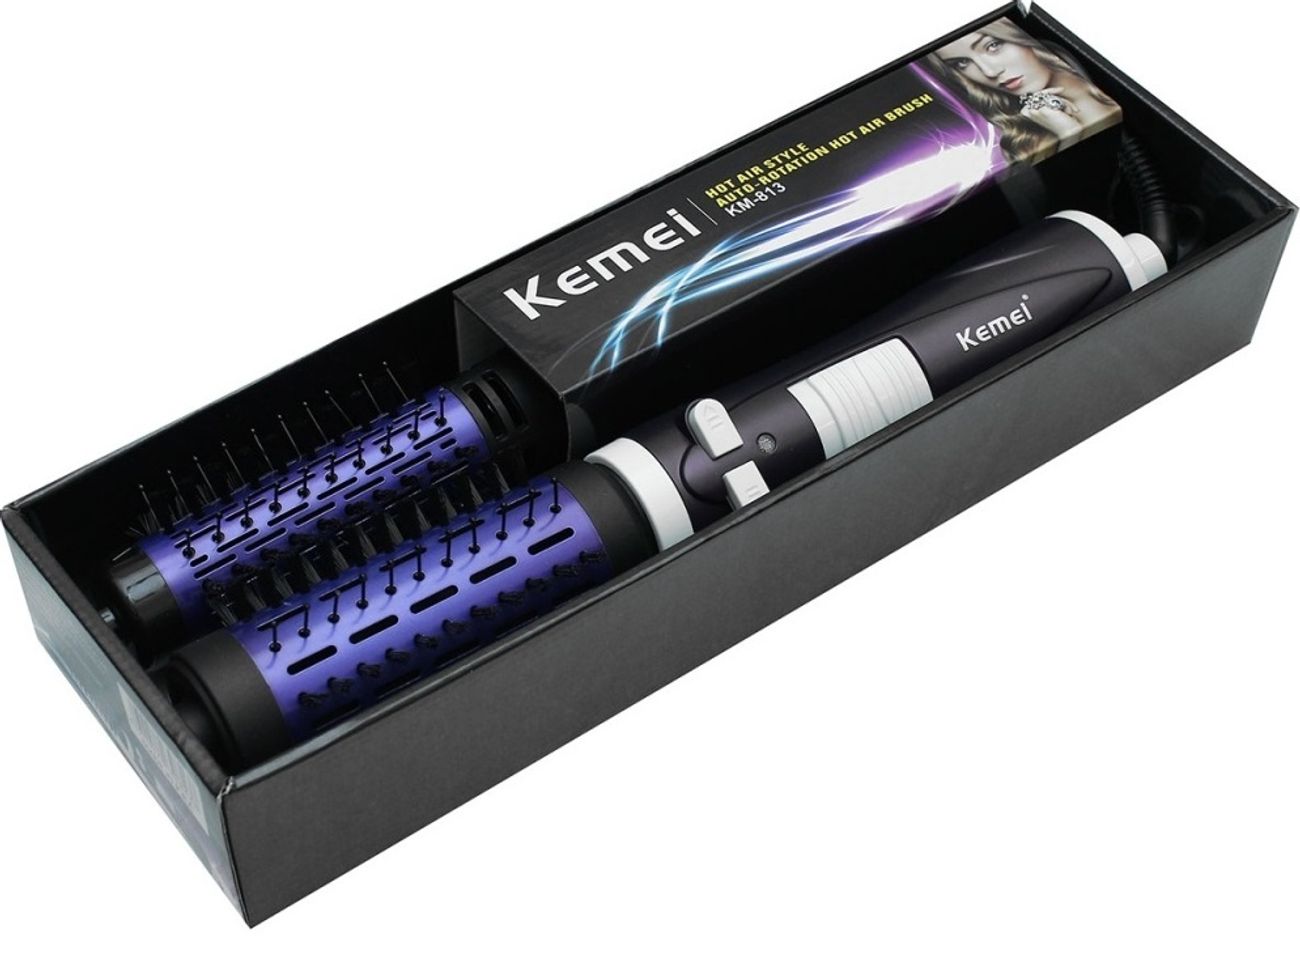 Lược điện sấy xoay 360 độ Kemei KM 813 nổi bật cả về thiết kế và chất lượng